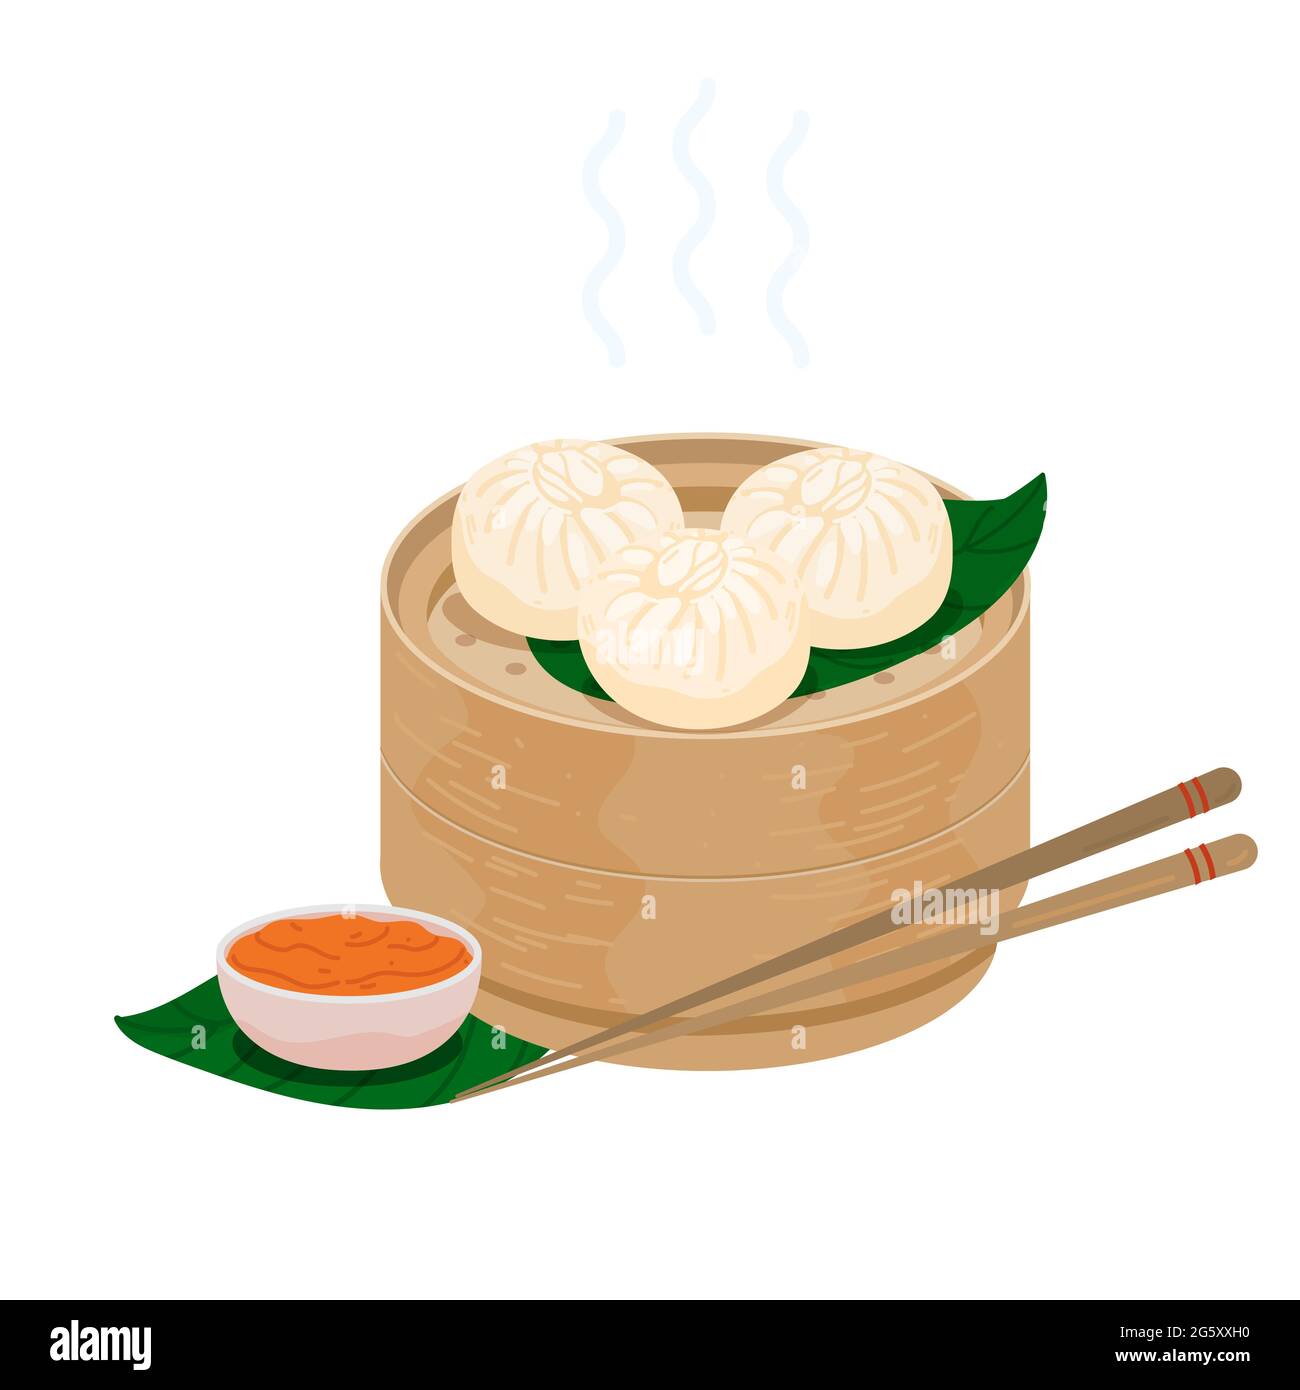 Baozi gedämpfte chinesische Brötchen. Momo-Knödel in einem Bambusholzkorb. Vektor-Illustration von bao zi Buns mit Sticks und Chutney-Sauce. Symbol Stock Vektor